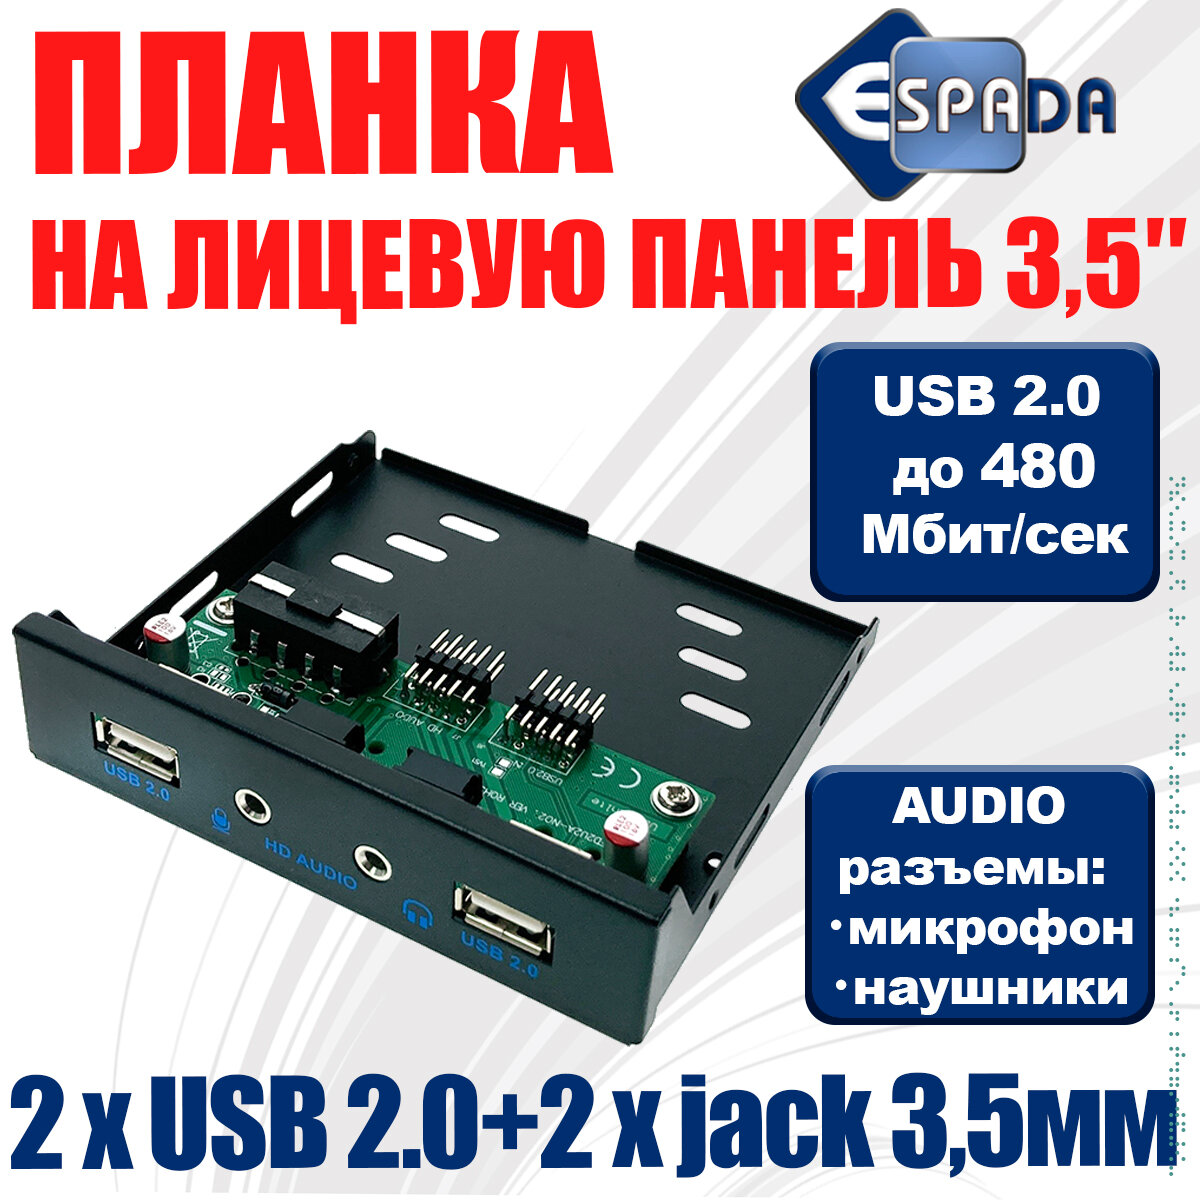 Планка на переднюю панель USB2.0 2 порта + 3.5mm audio jack 2 порта Eu235, Espada (панель лицевая в 3.5" отсек корпуса ПК )